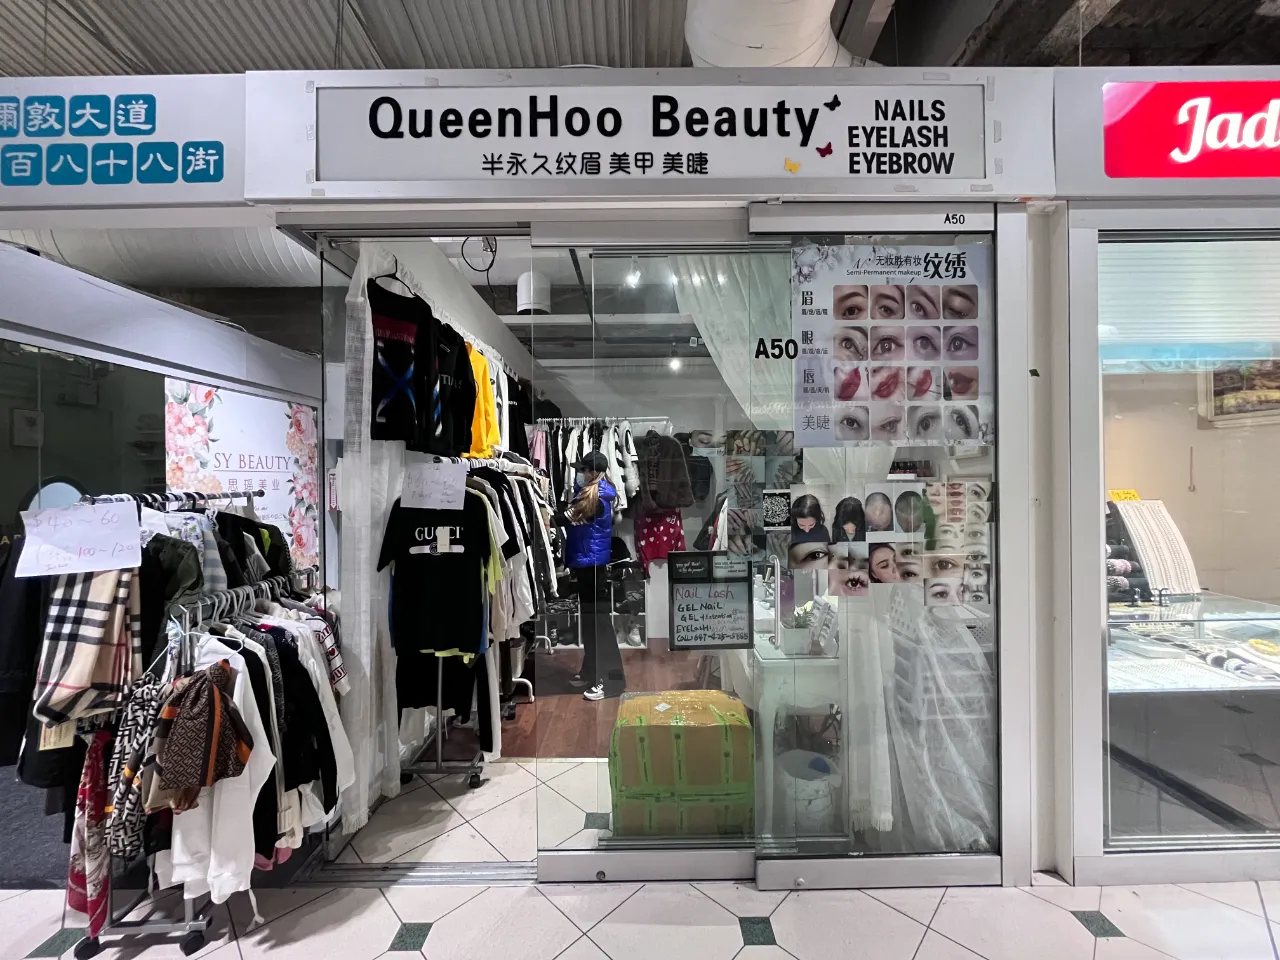 A50 - QueenHoo Beauty